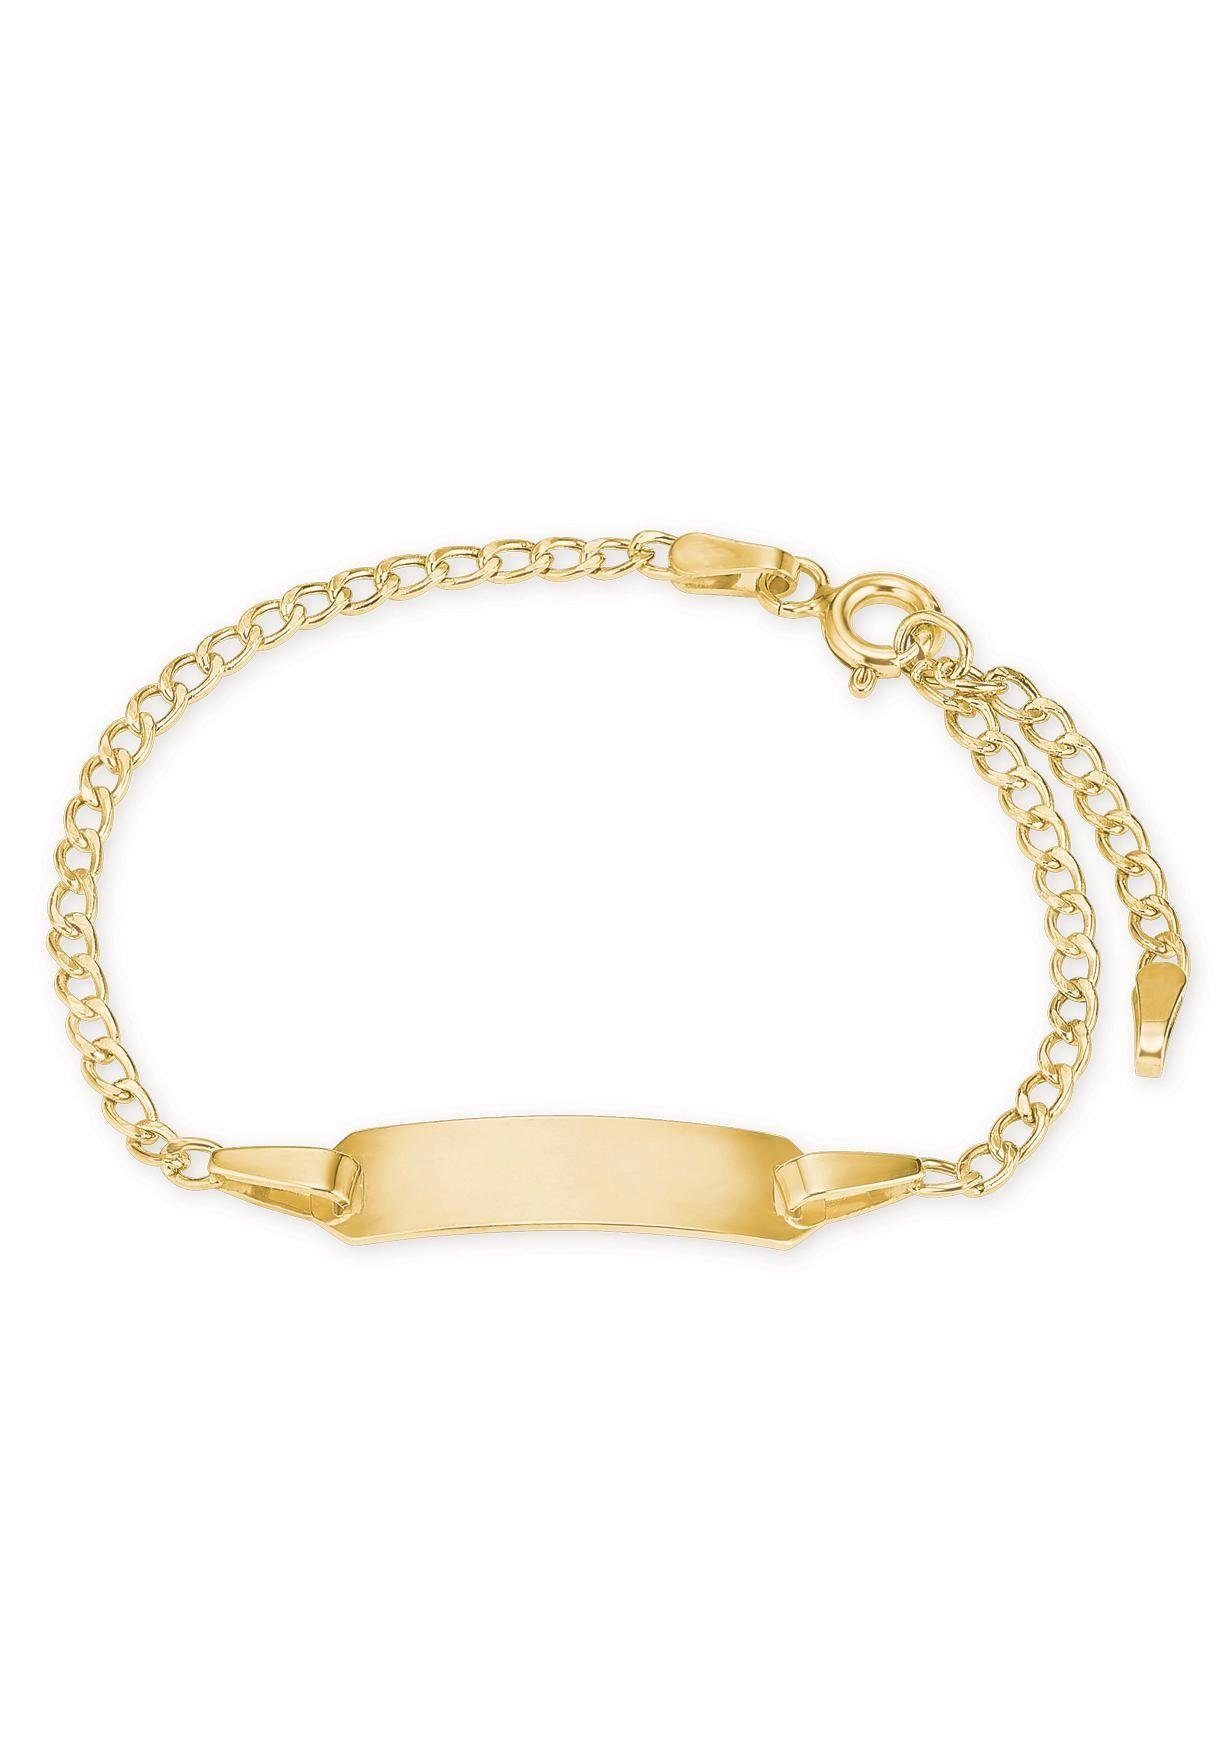 Armband 375 Gold 2014338, Amor